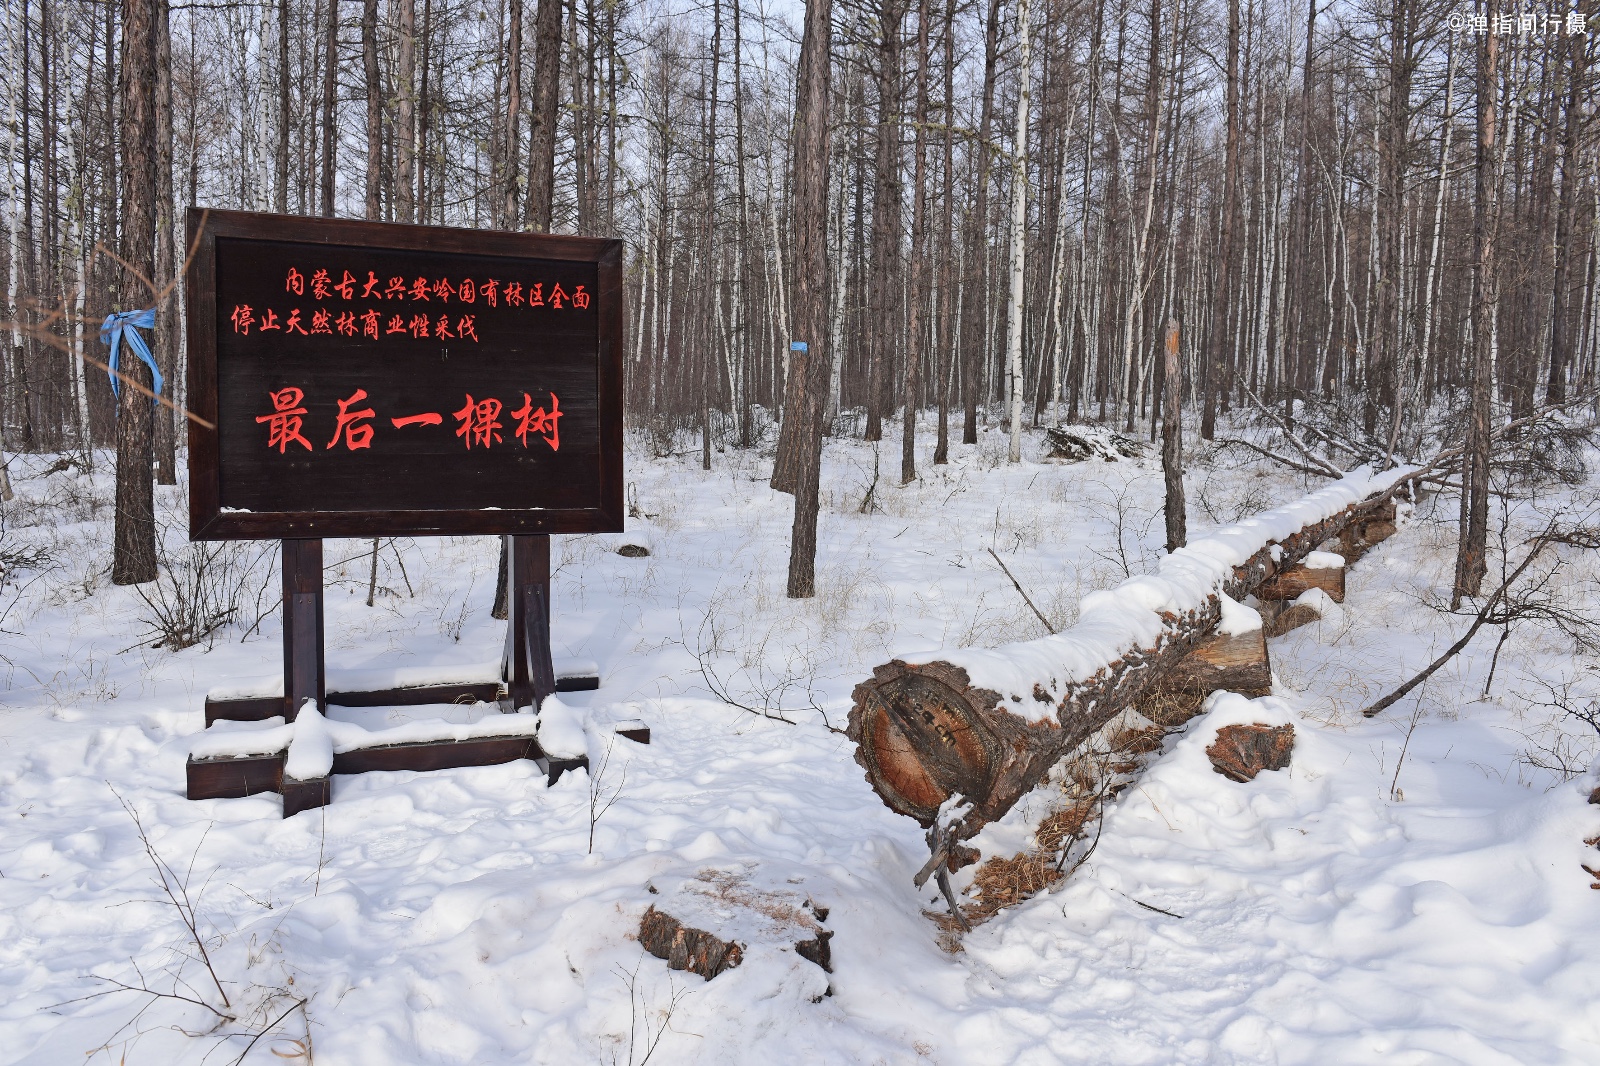 Lesy SR predstavili novú aplikáciu Otvorené drevo, ktorá uľahčí kontrolu hospodárenia v lesoch ...